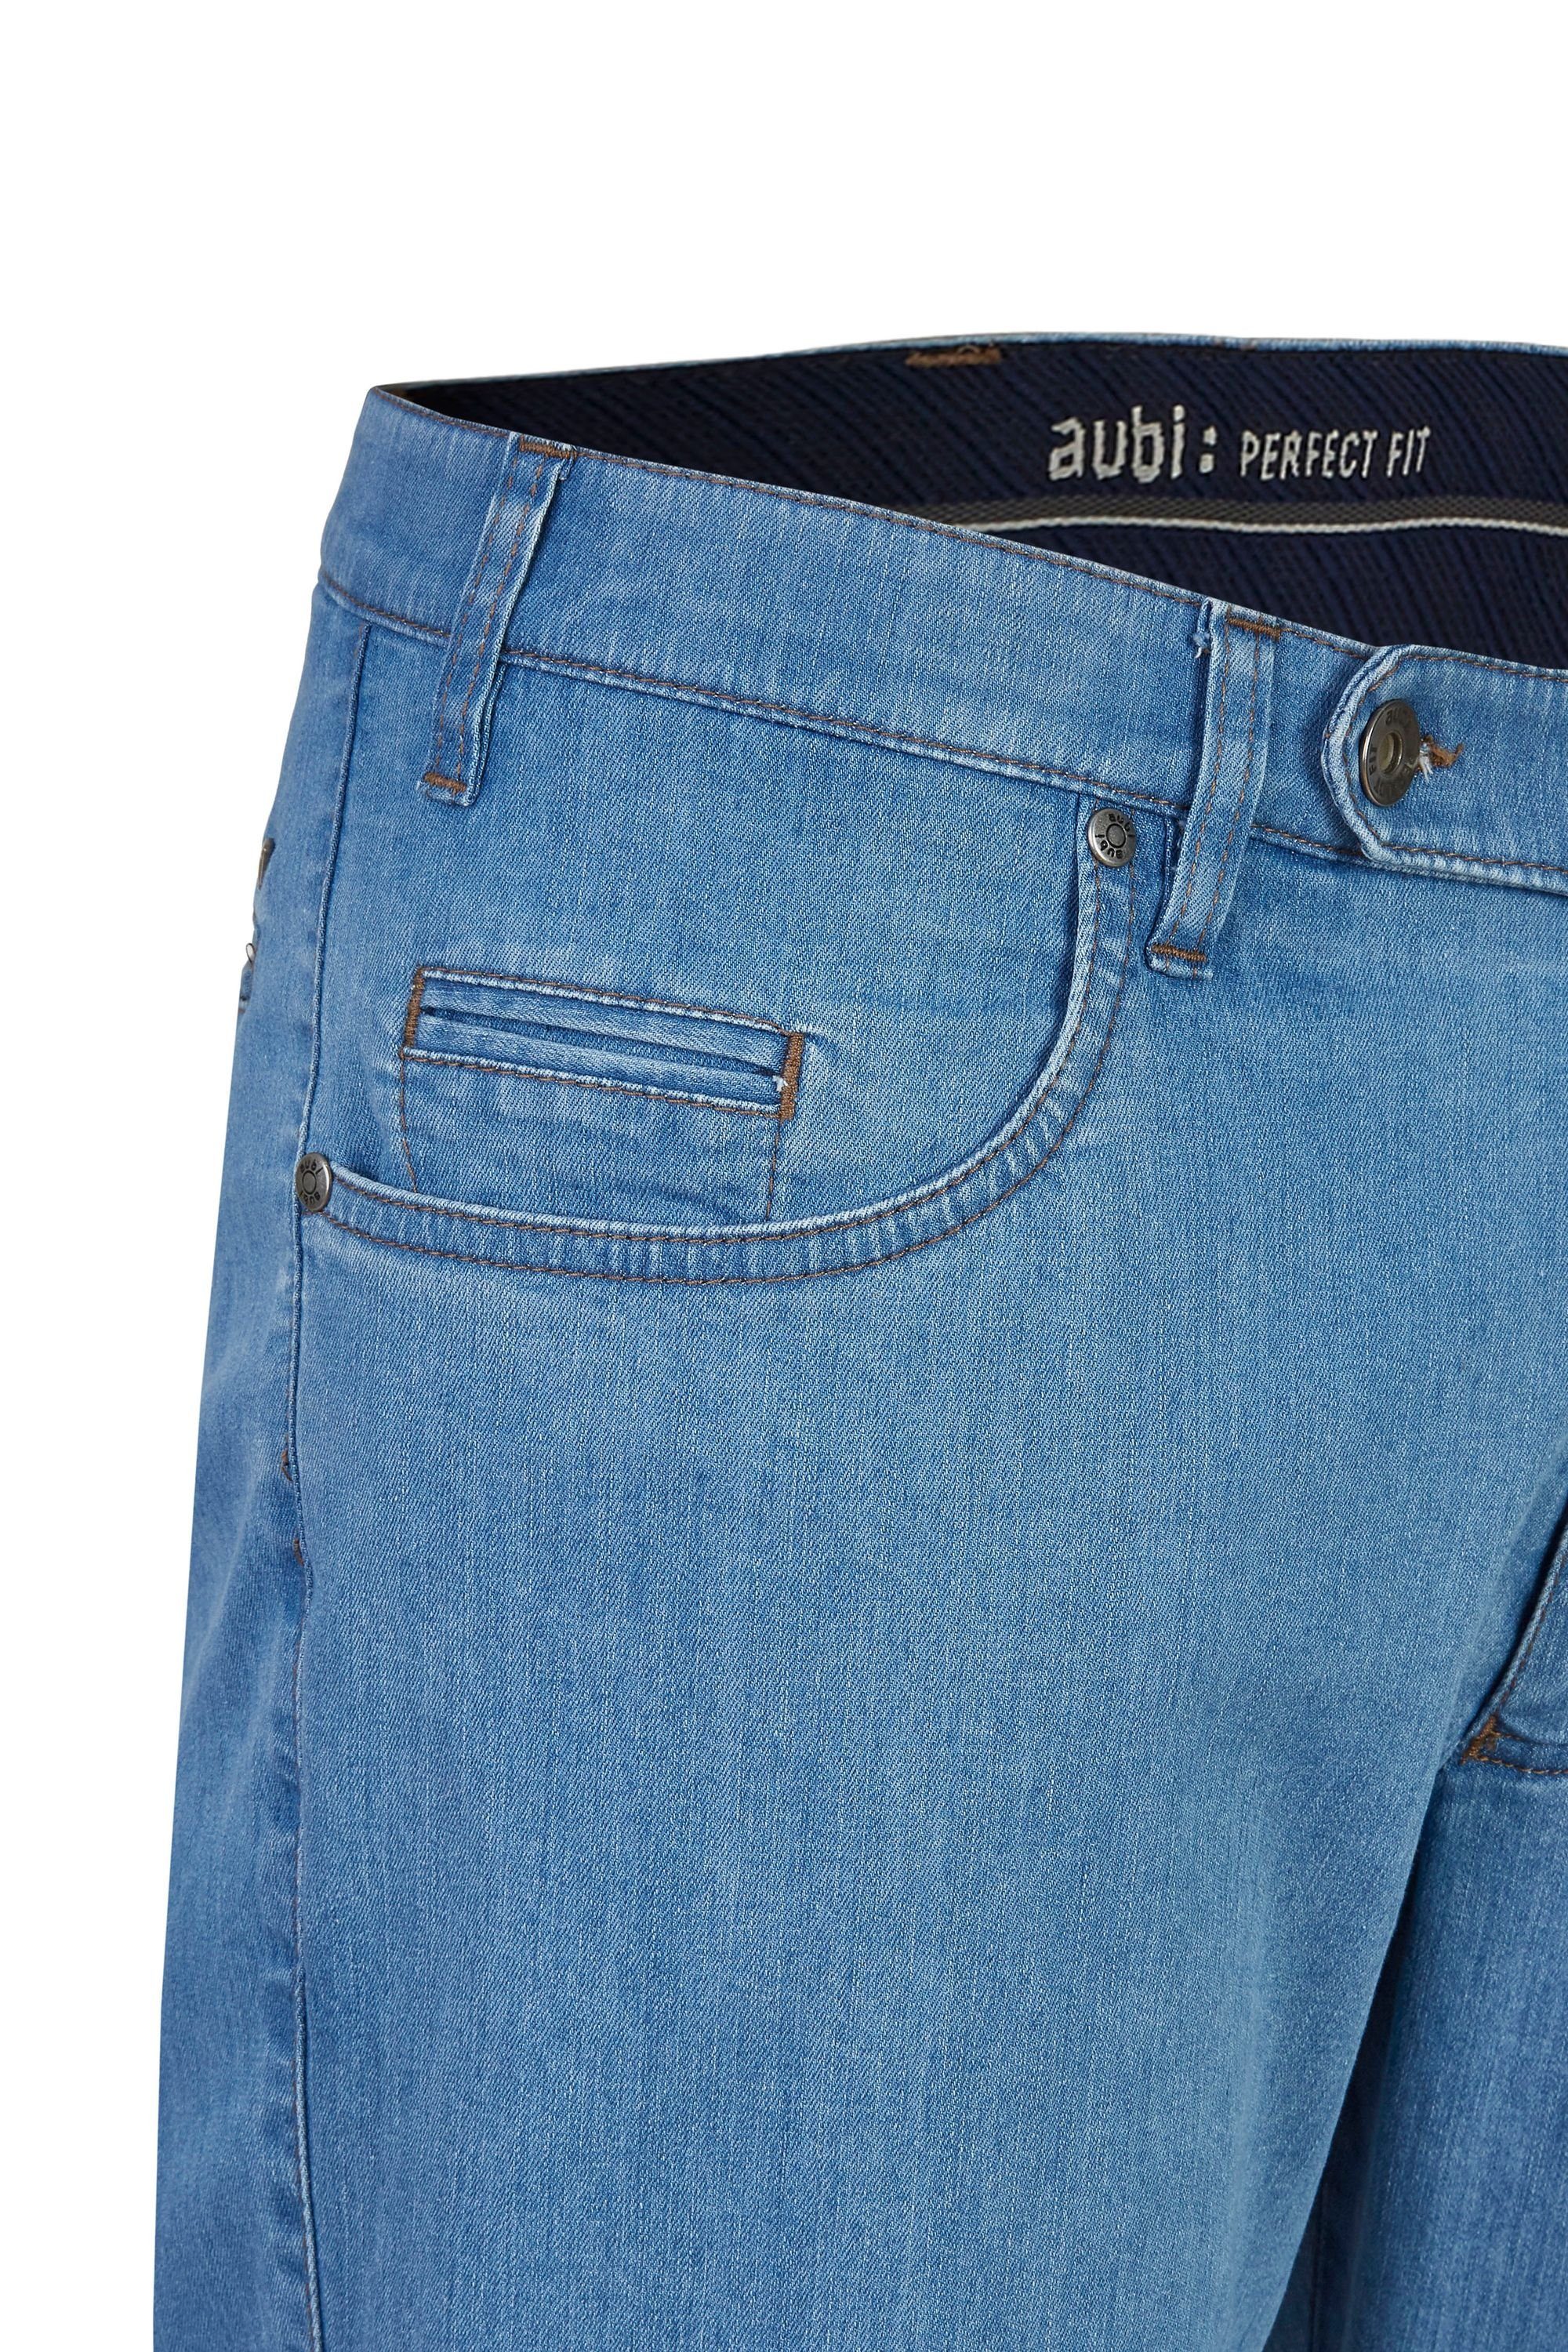 aubi: Bequeme Jeans Jeans Fit Hose High Herren Modell 577 (43) bleached Perfect Sommer Stretch Flex aus aubi Baumwolle